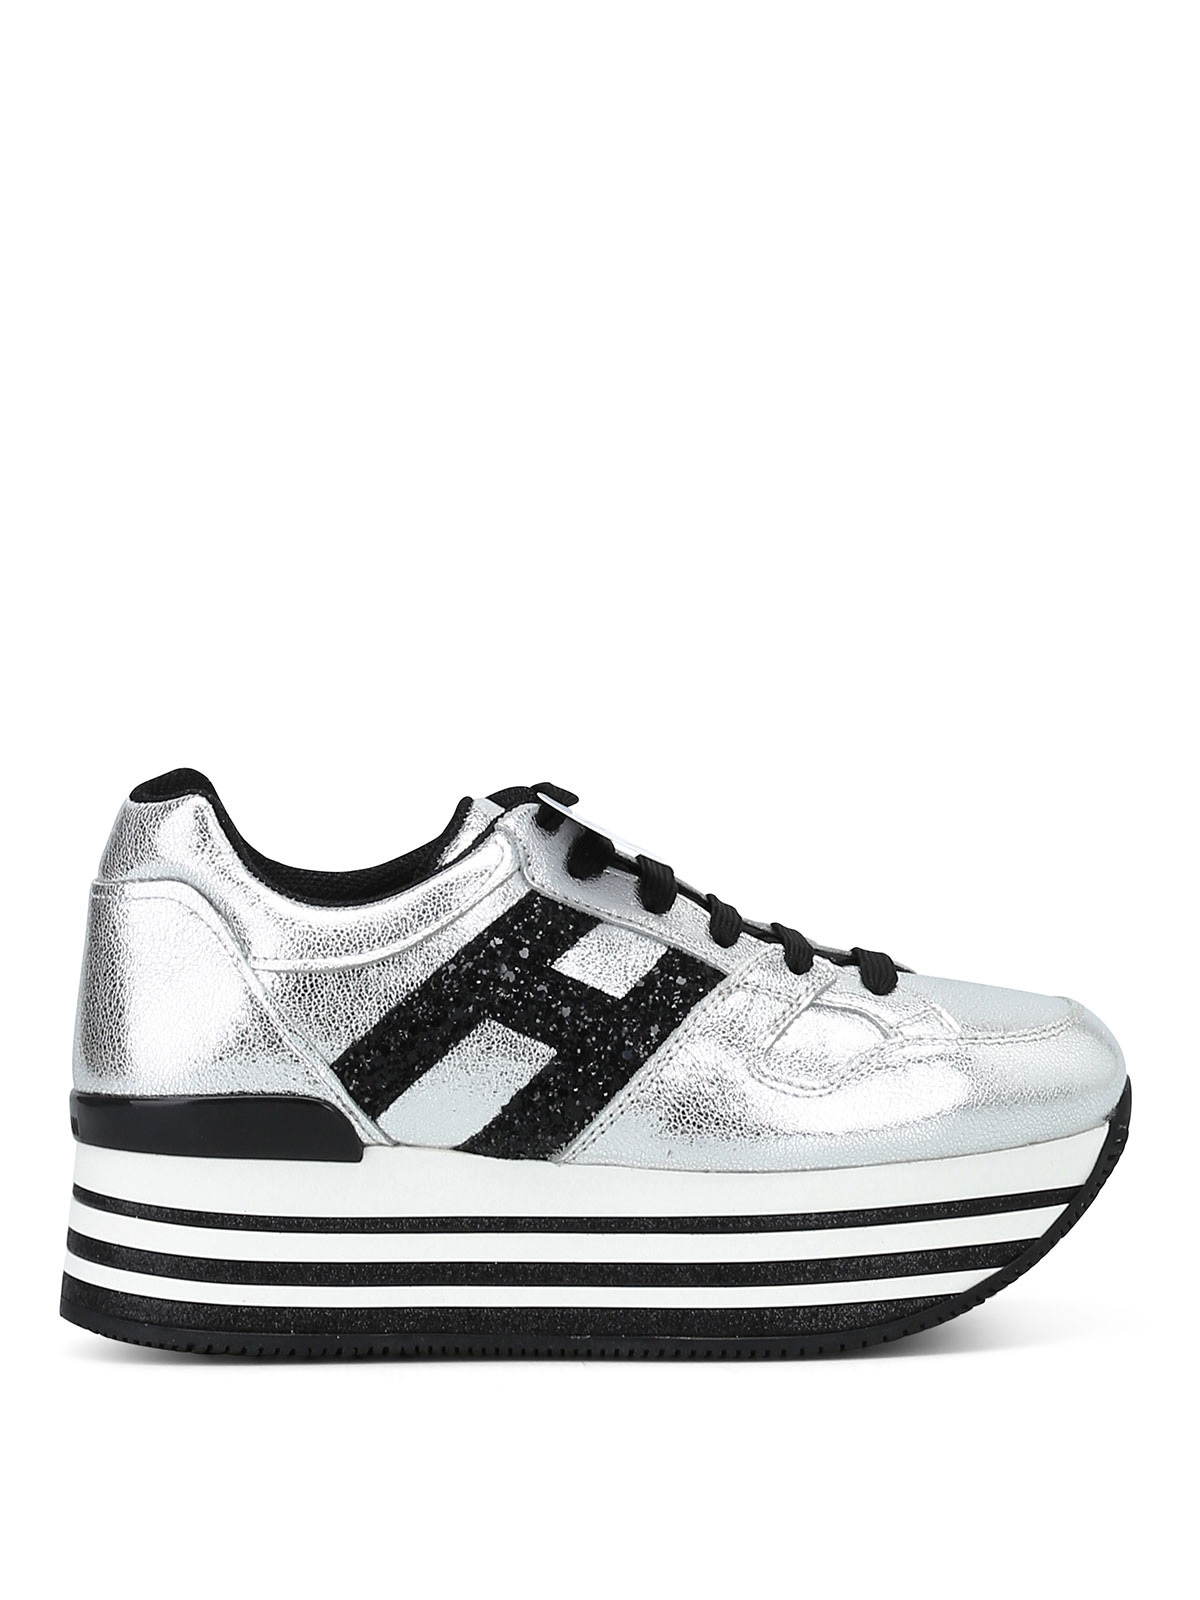 Hogan - Sneaker Maxi H222 in pelle argento - sneakers - HXW3680T548JHD1920